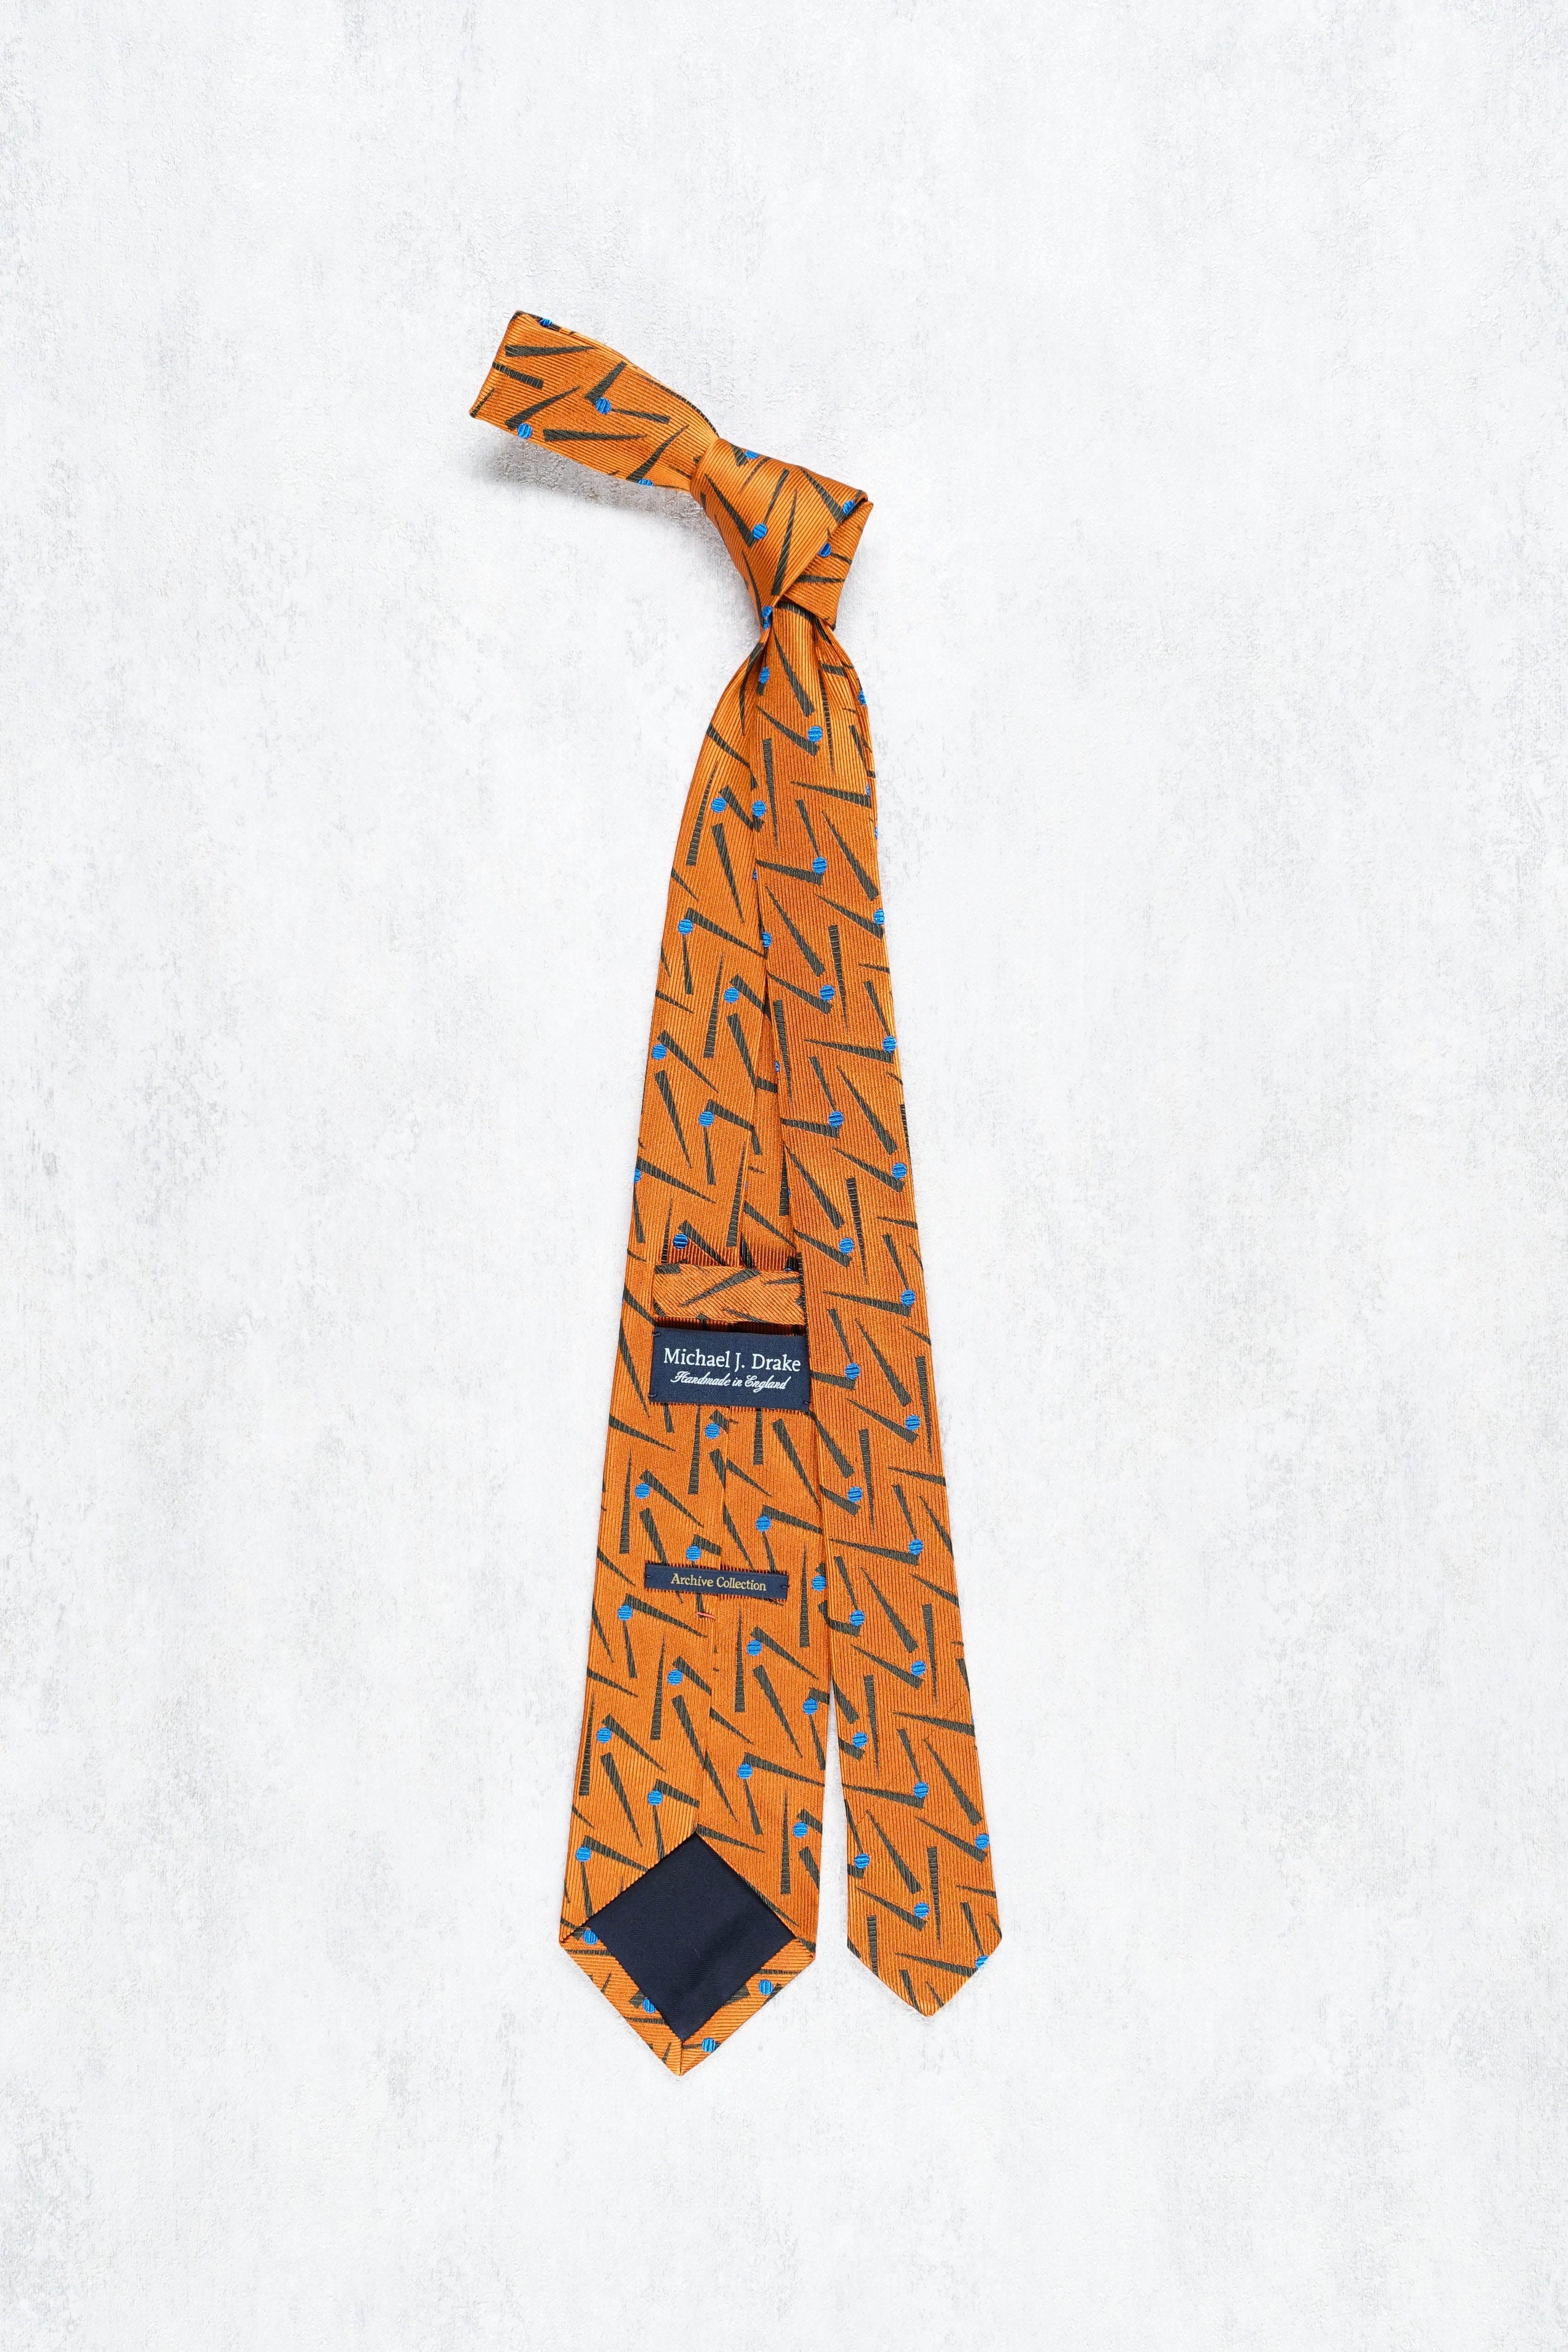 Drake's Orange with Brown/Blue Pattern Silk Tie